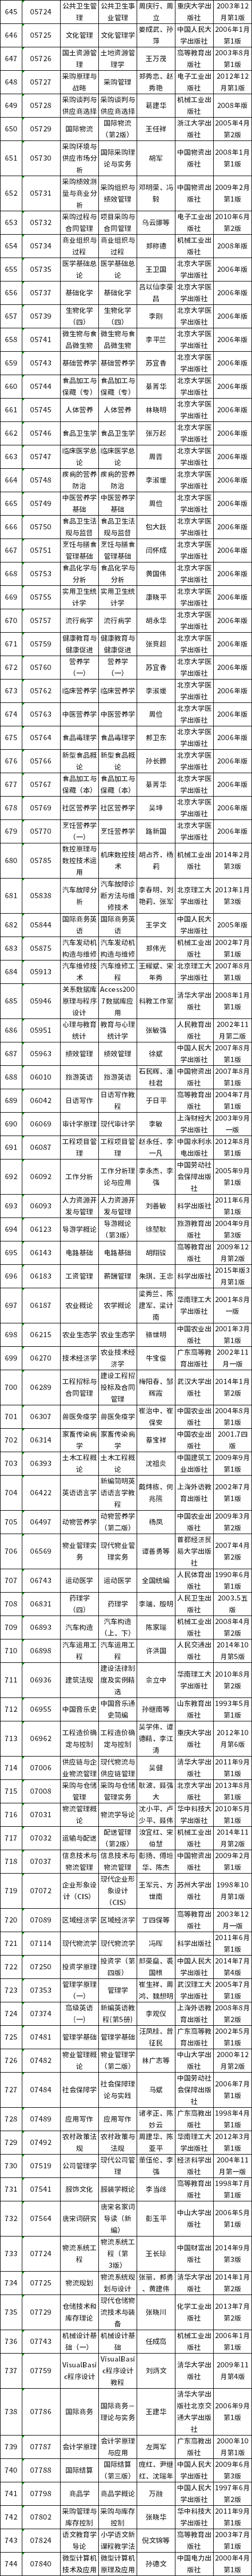 广东省自考开考课程使用教材表